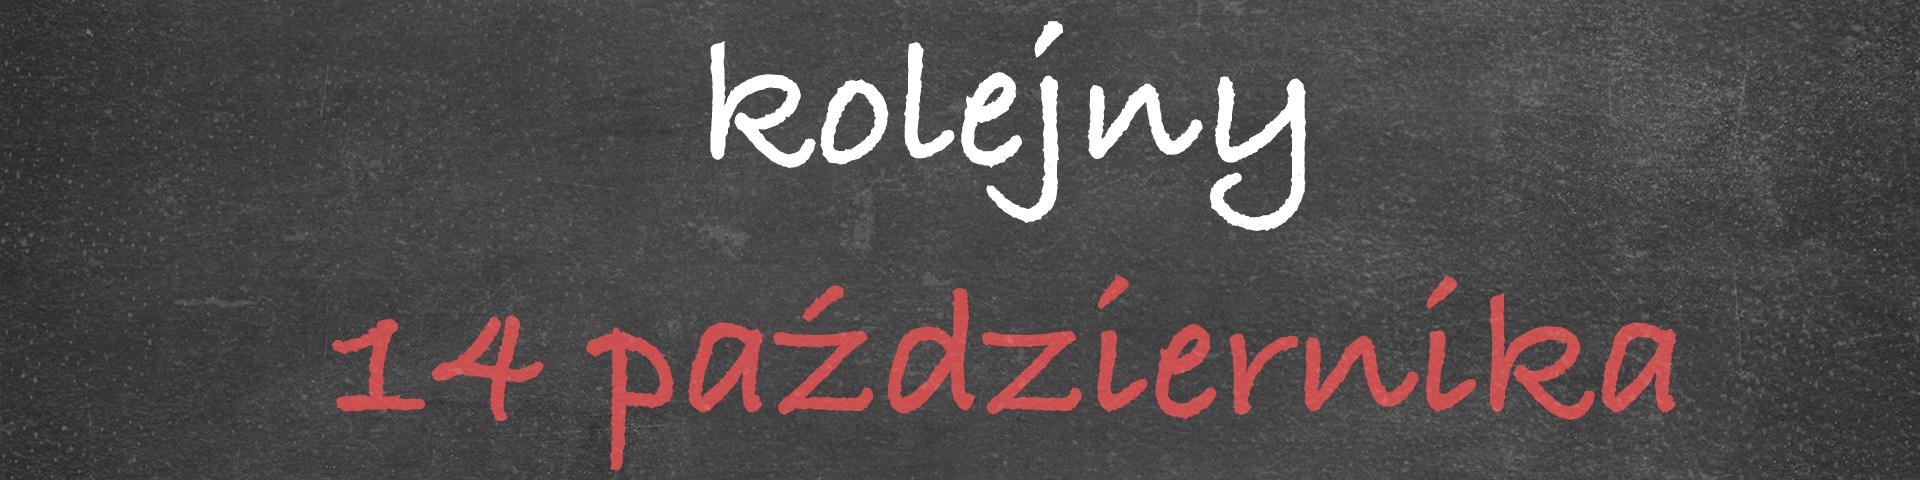 Horyzonty polskiej edukacji — kolejny 14 października